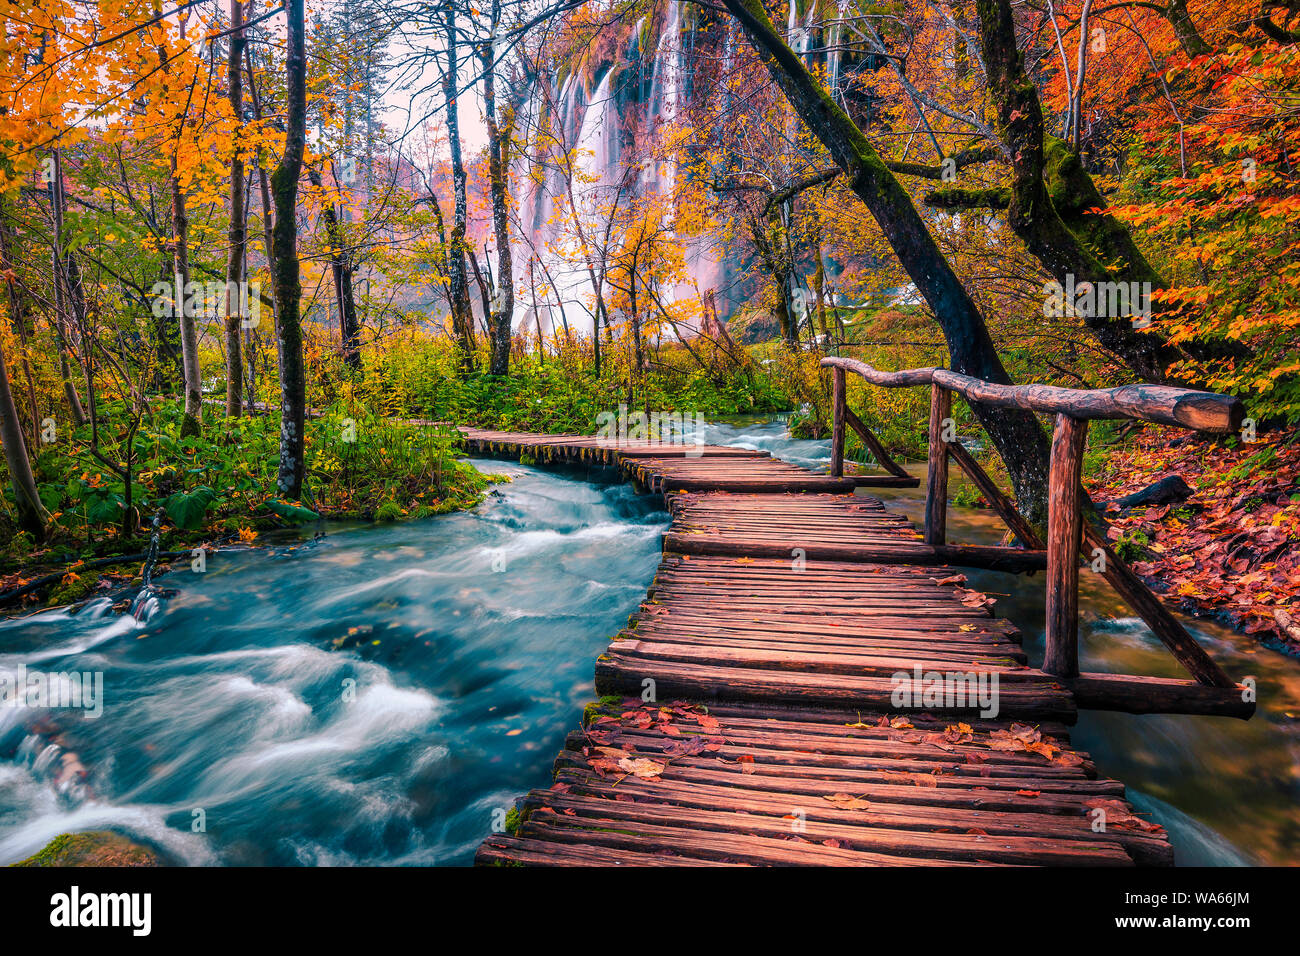 Turistica popolare ponte di legno in colori d'autunno deep forest. Passeggiata in legno con clean brook e spettacolari cascate, laghi di Plitvice National Pa Foto Stock